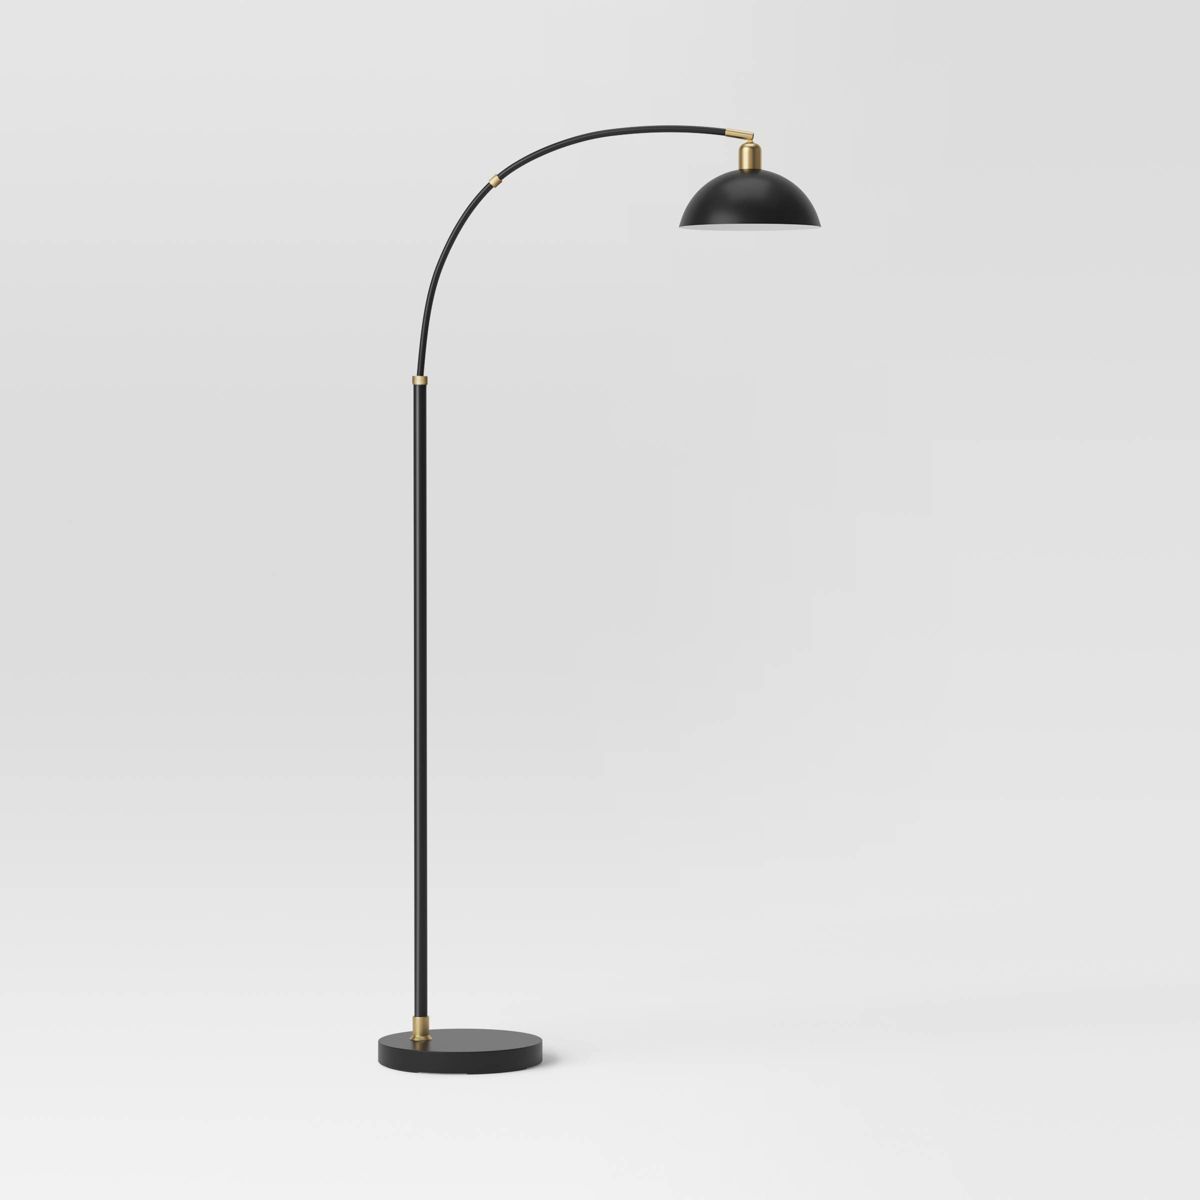 Adjustable Arc Floor Lamp with Swivel Head Black (Includes LED Light Bulb) - Threshold™ | Target